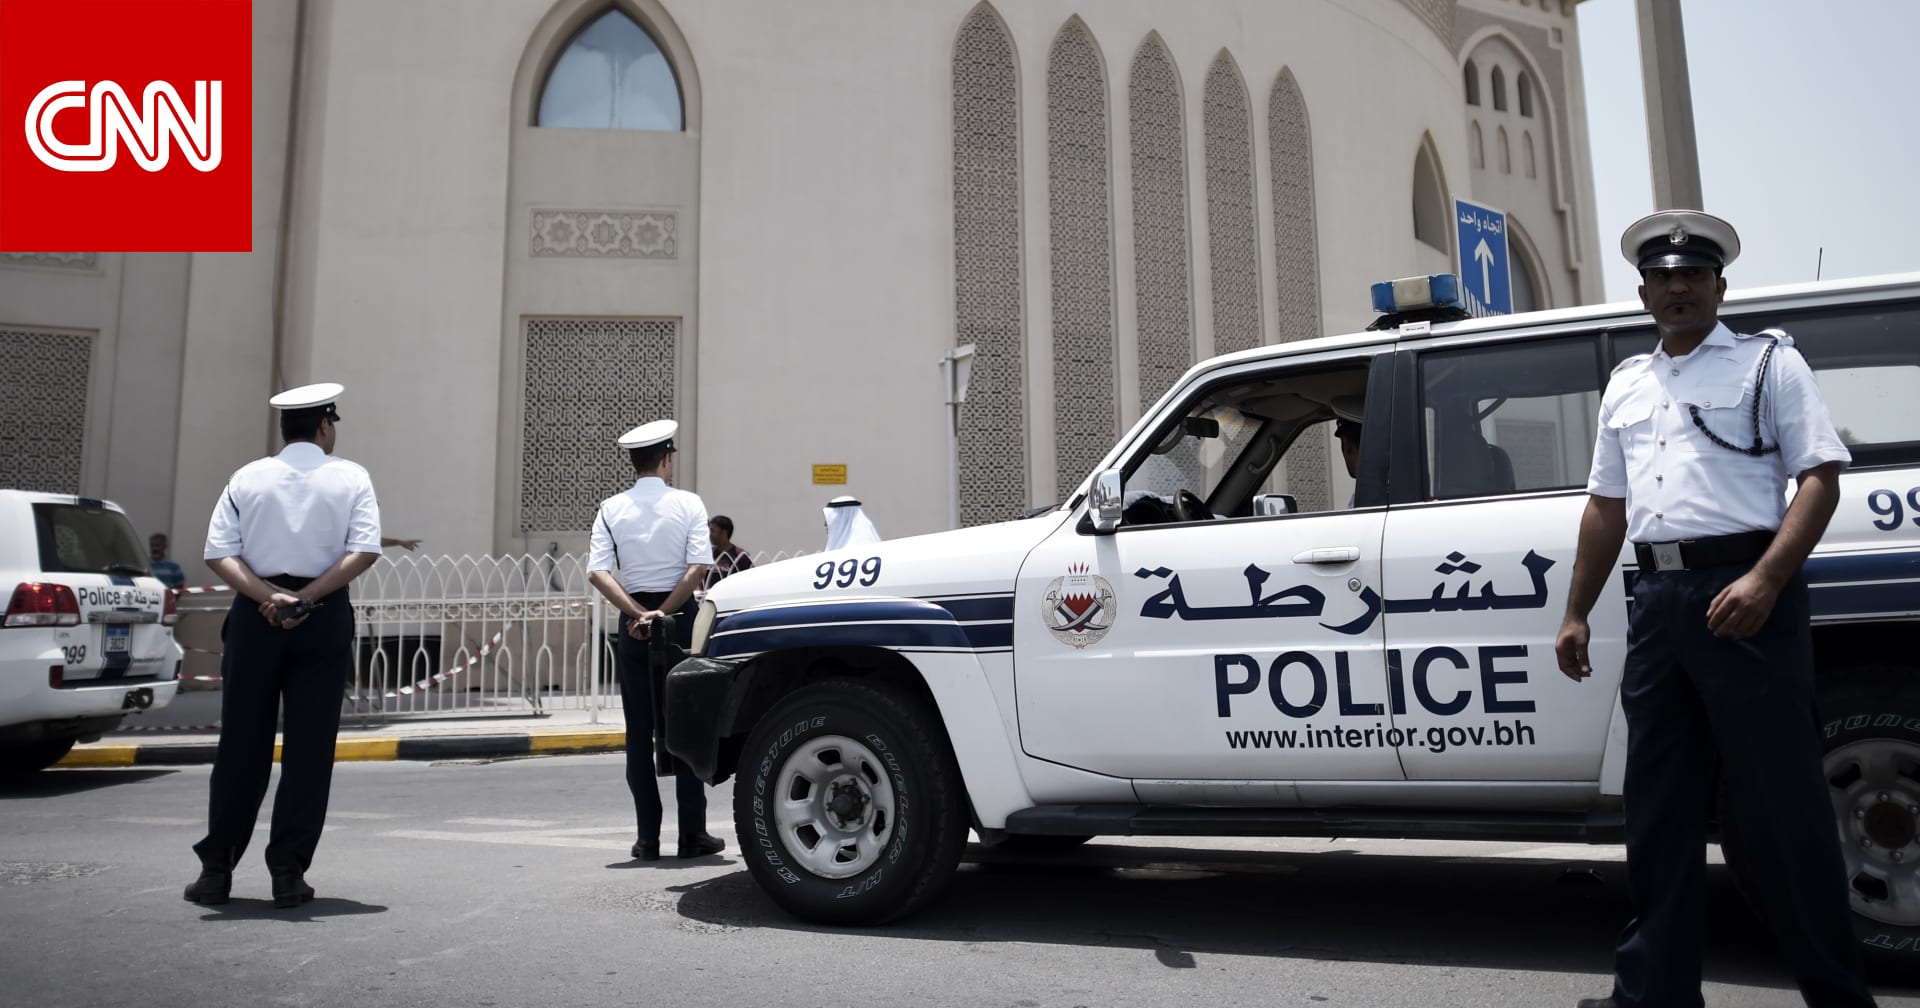 بلغت نحو مليون دولار.. البحرين تكشف تفاصيل قضية اختلاس لوافدين بشركة صرافة